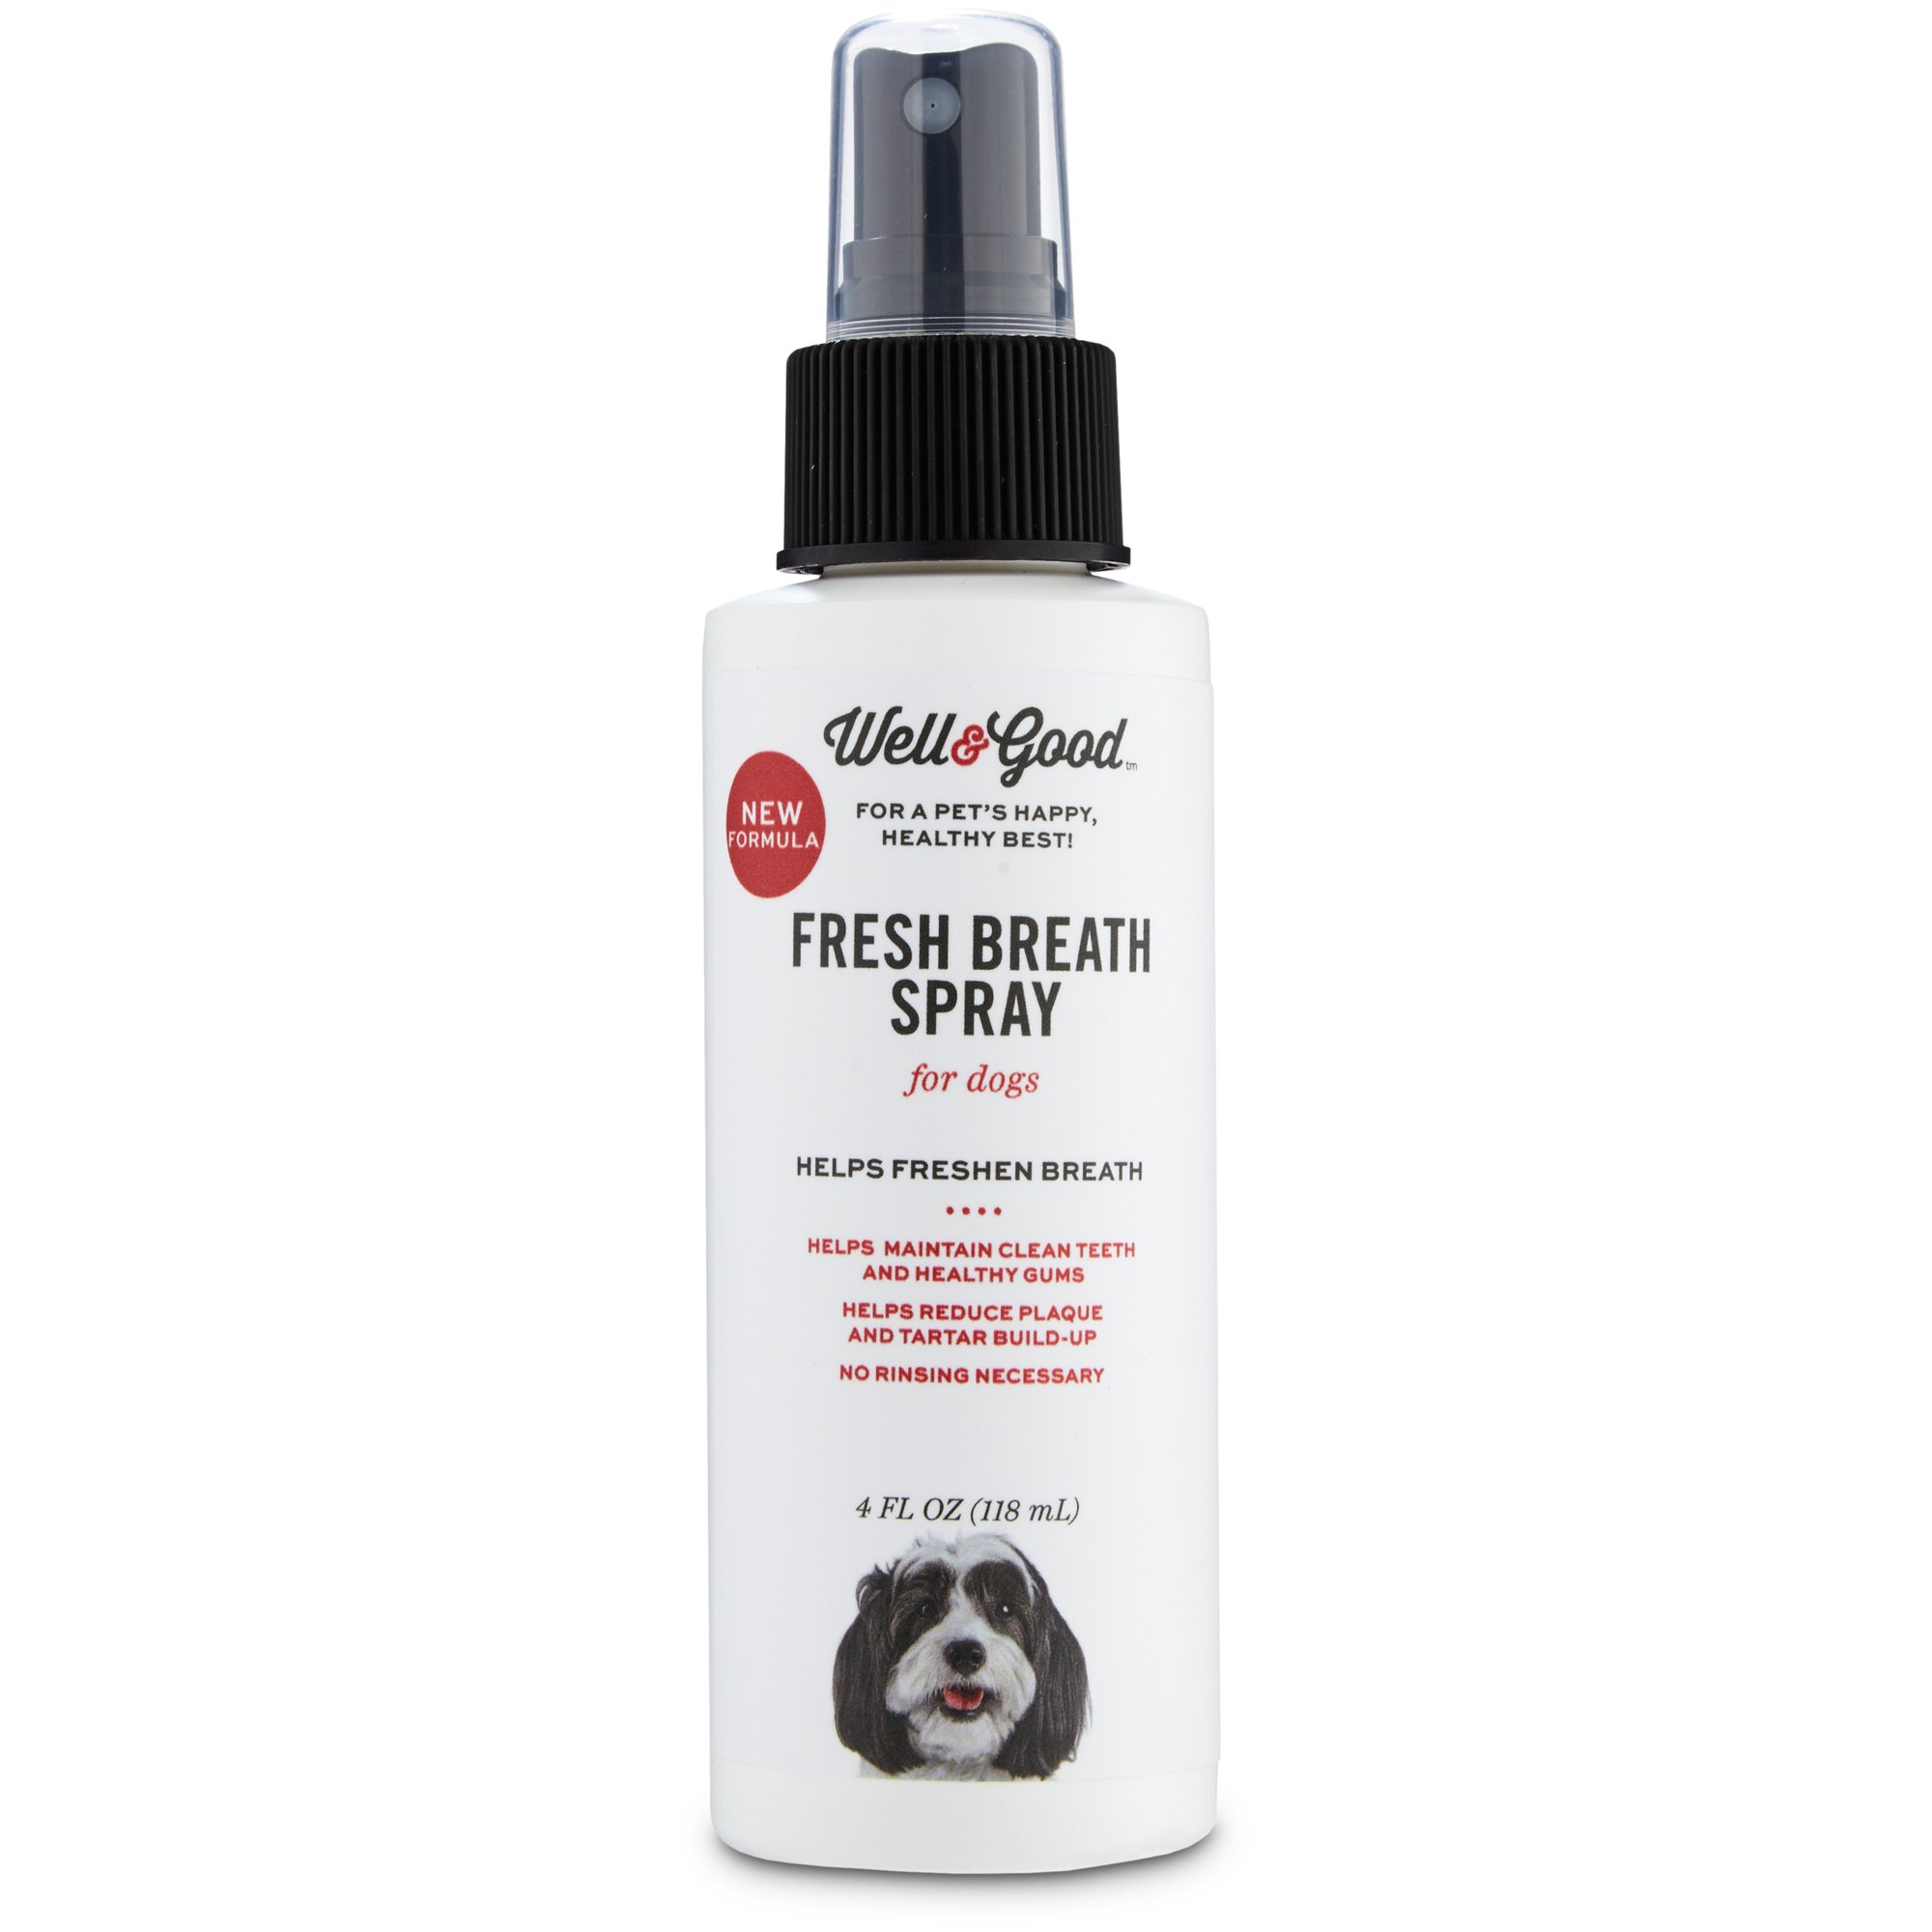 fresh breath spray for dogs